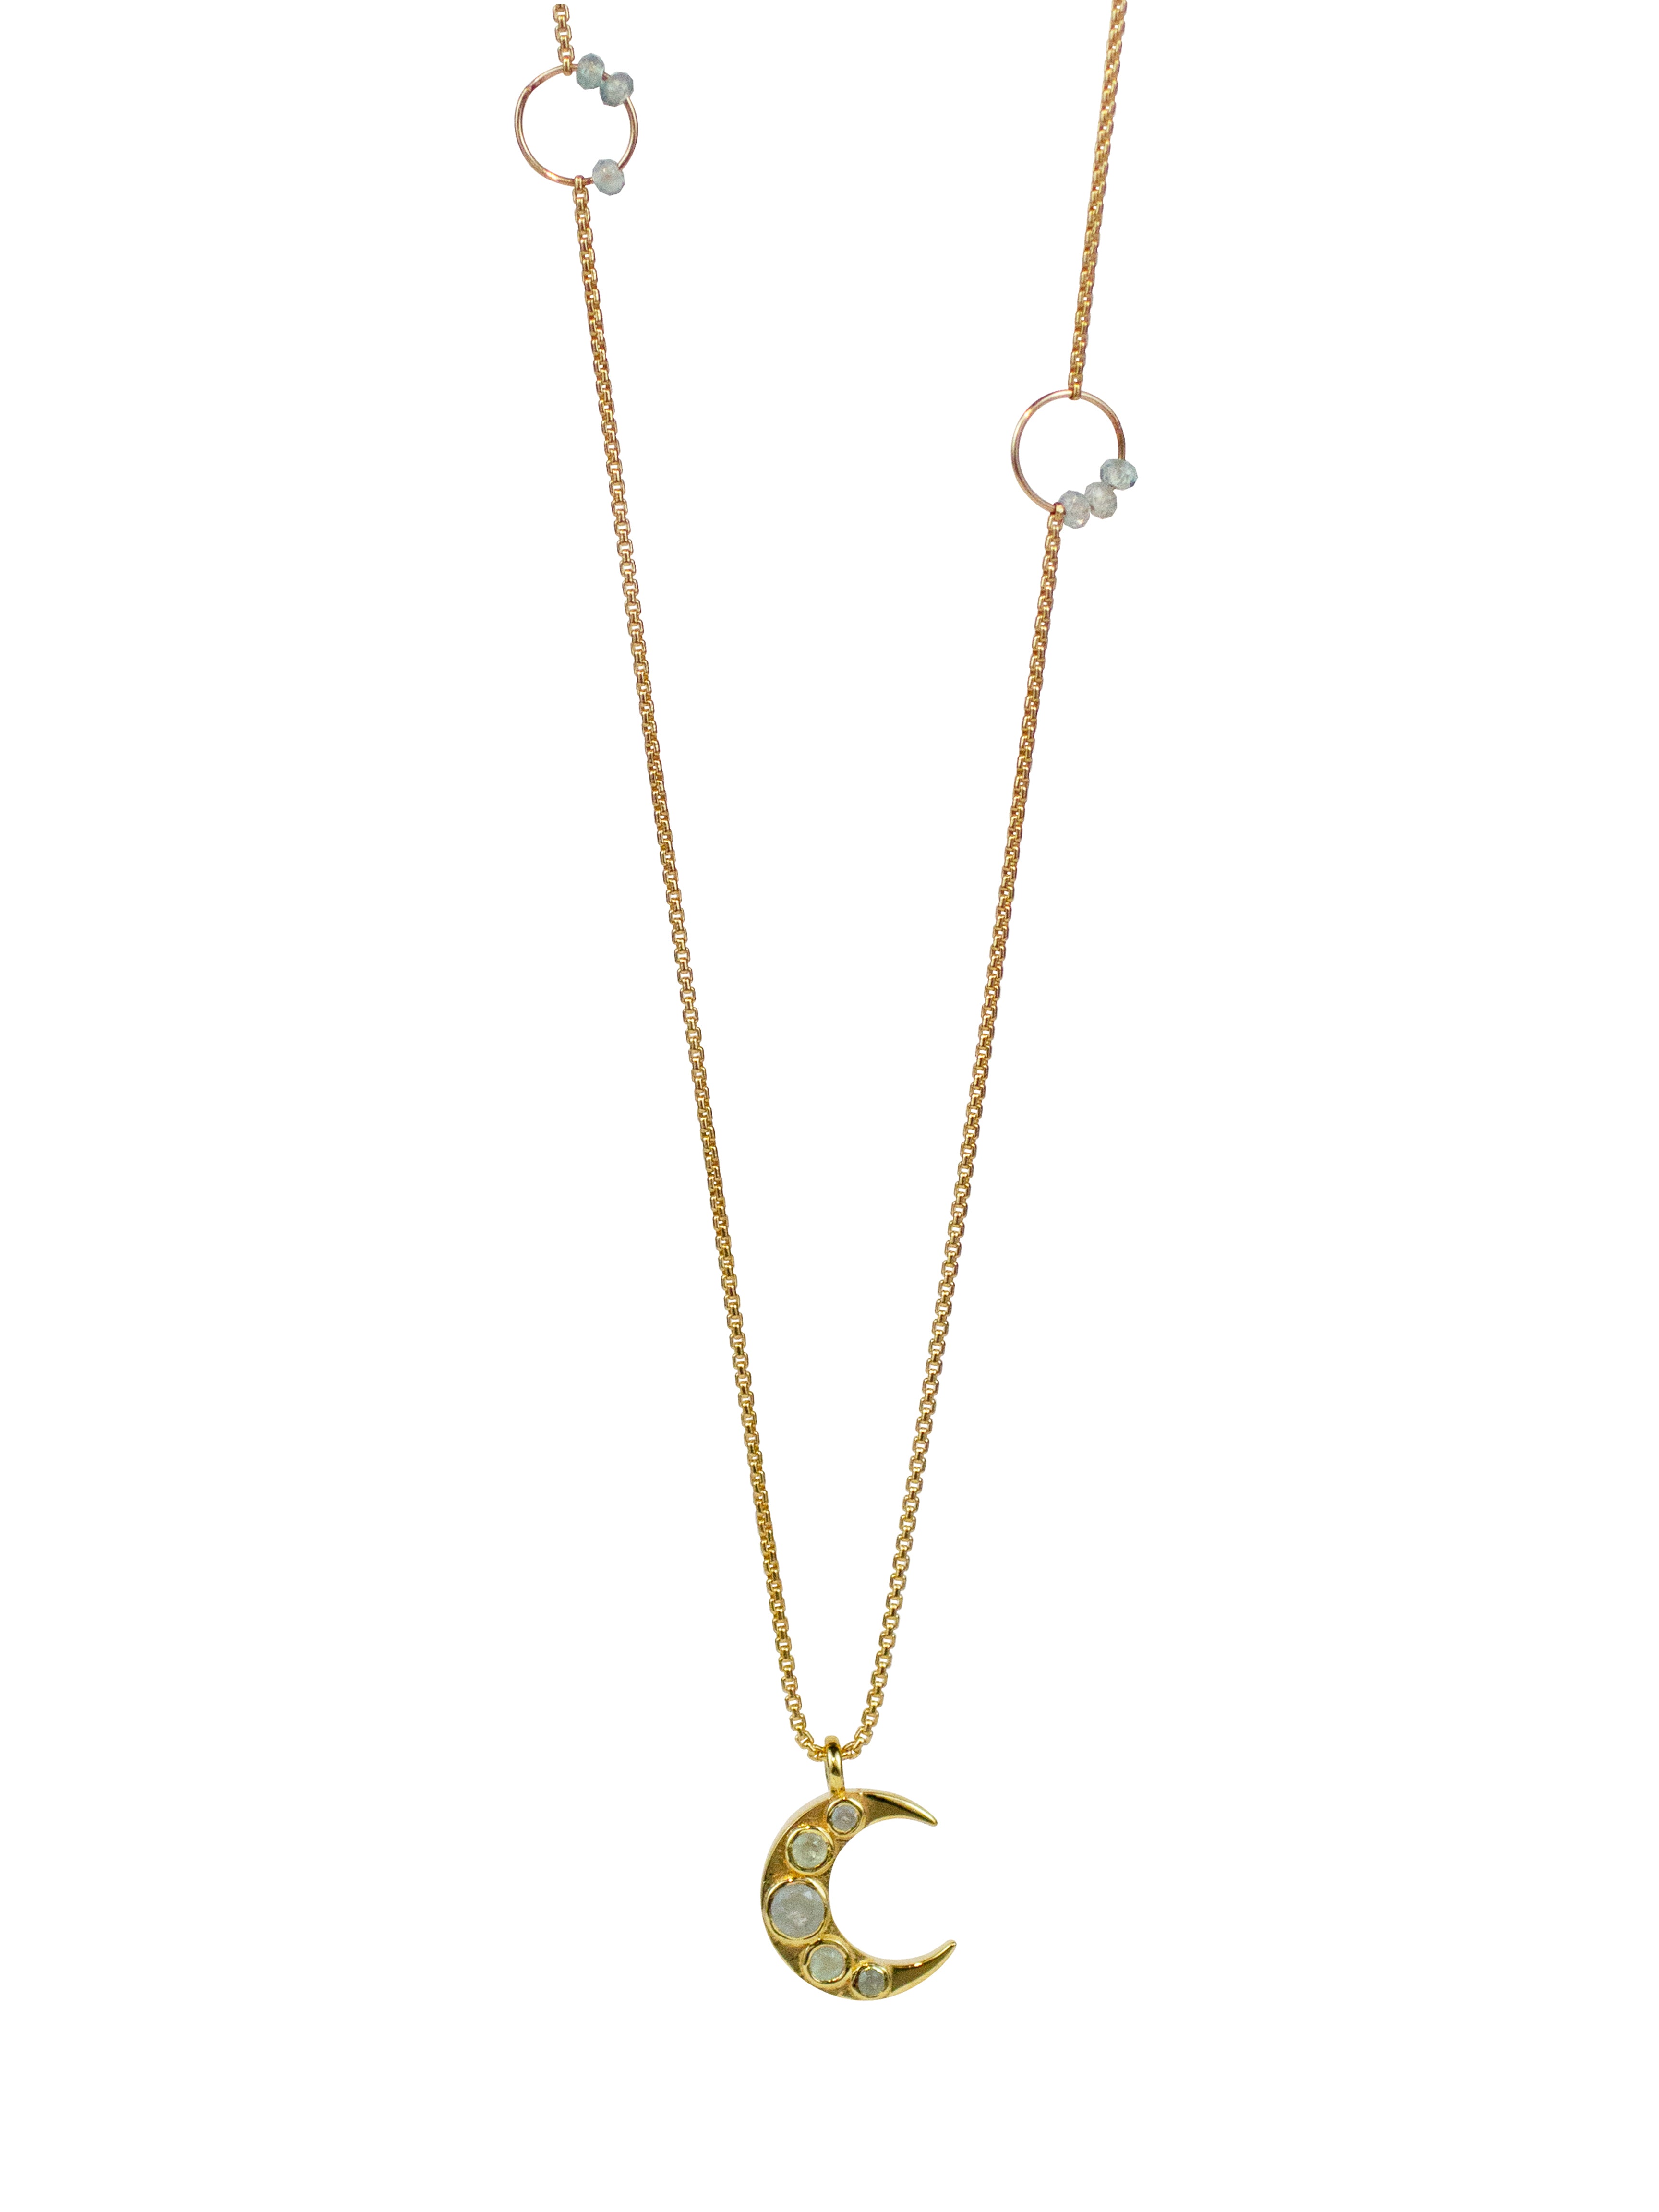 Callisto Necklace - Lulu Designs Jewelry